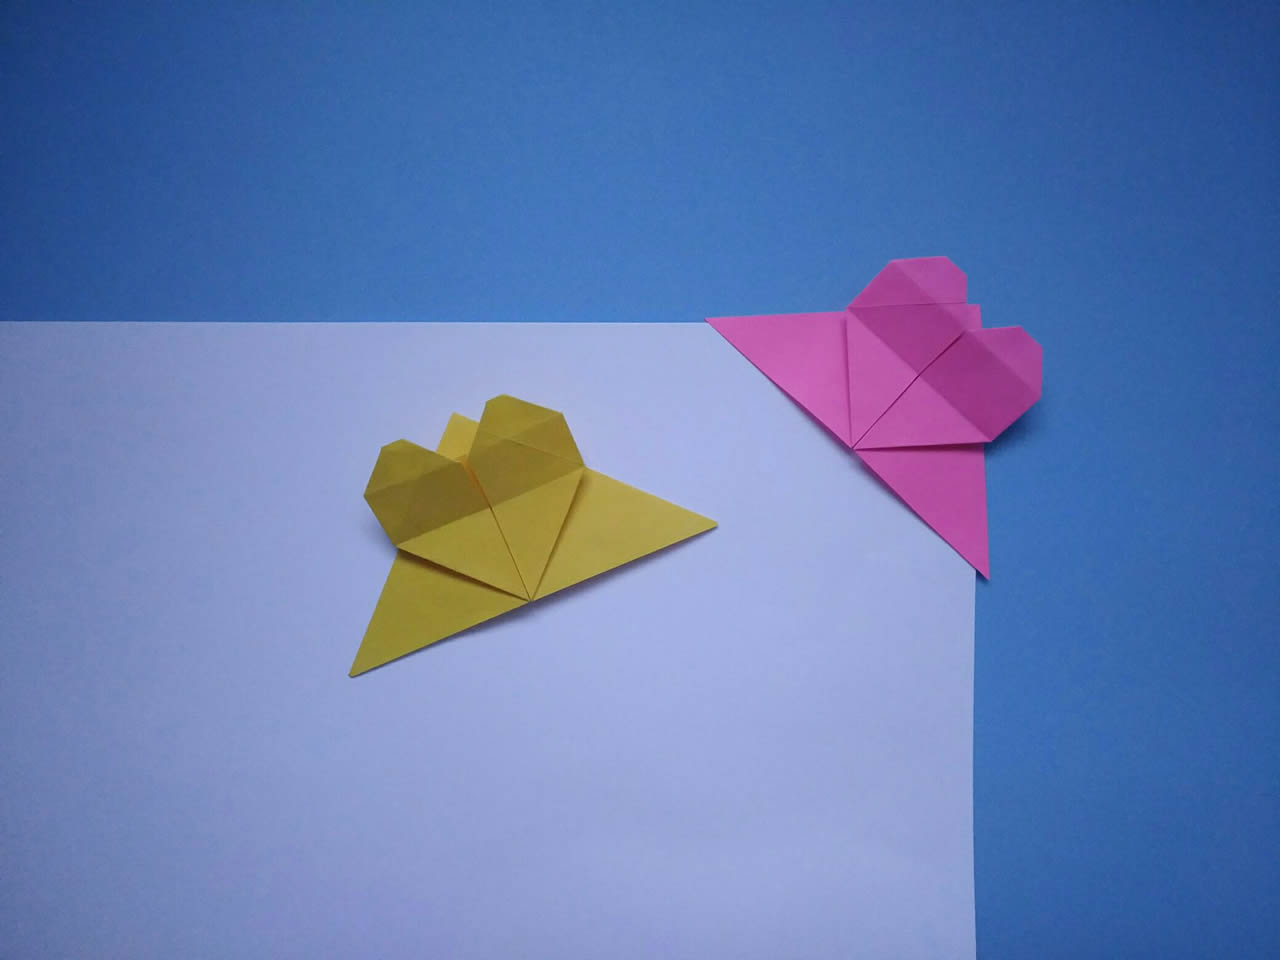 漂亮的爱心书签折纸,简单几步折一个心形书签,儿童益智手工折纸